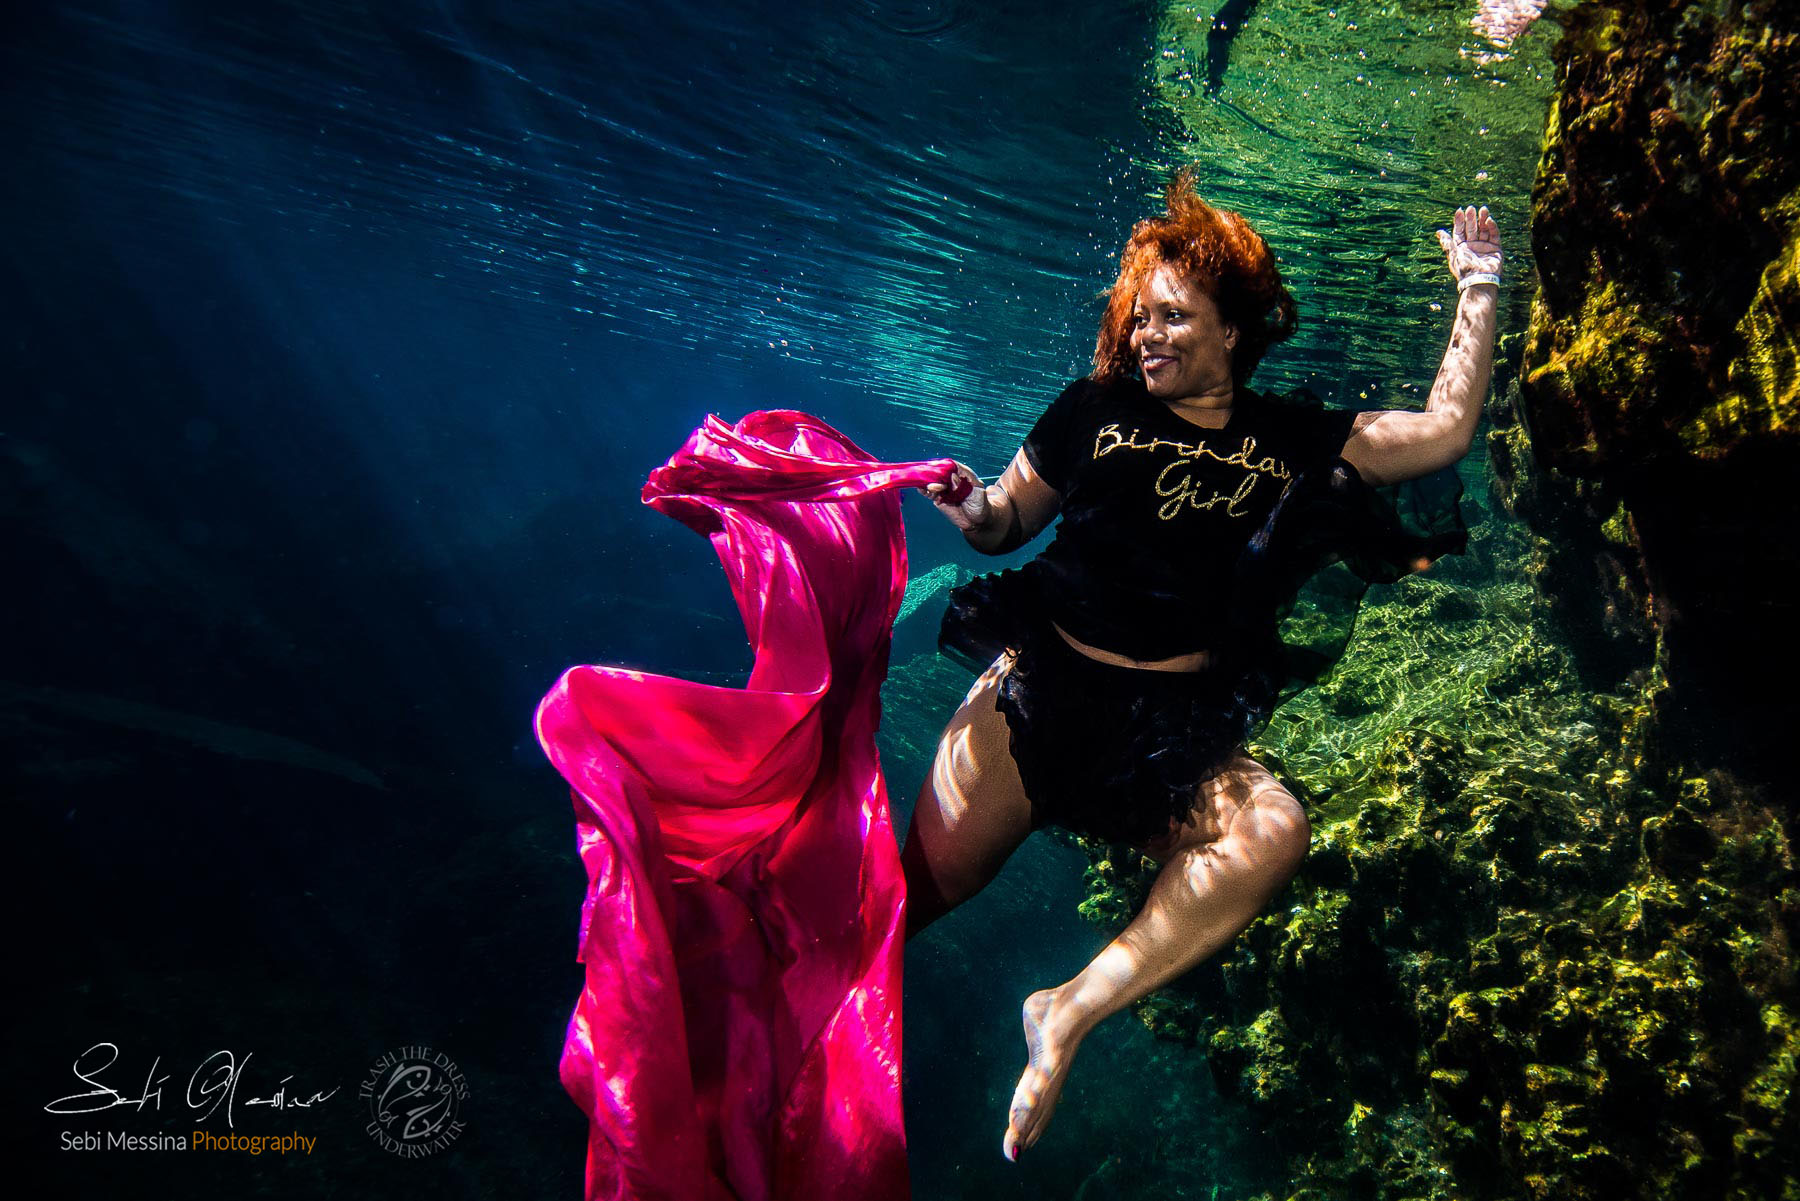 Birthday Underwater Photoshoot in Tulum - Sebi Messina Photography